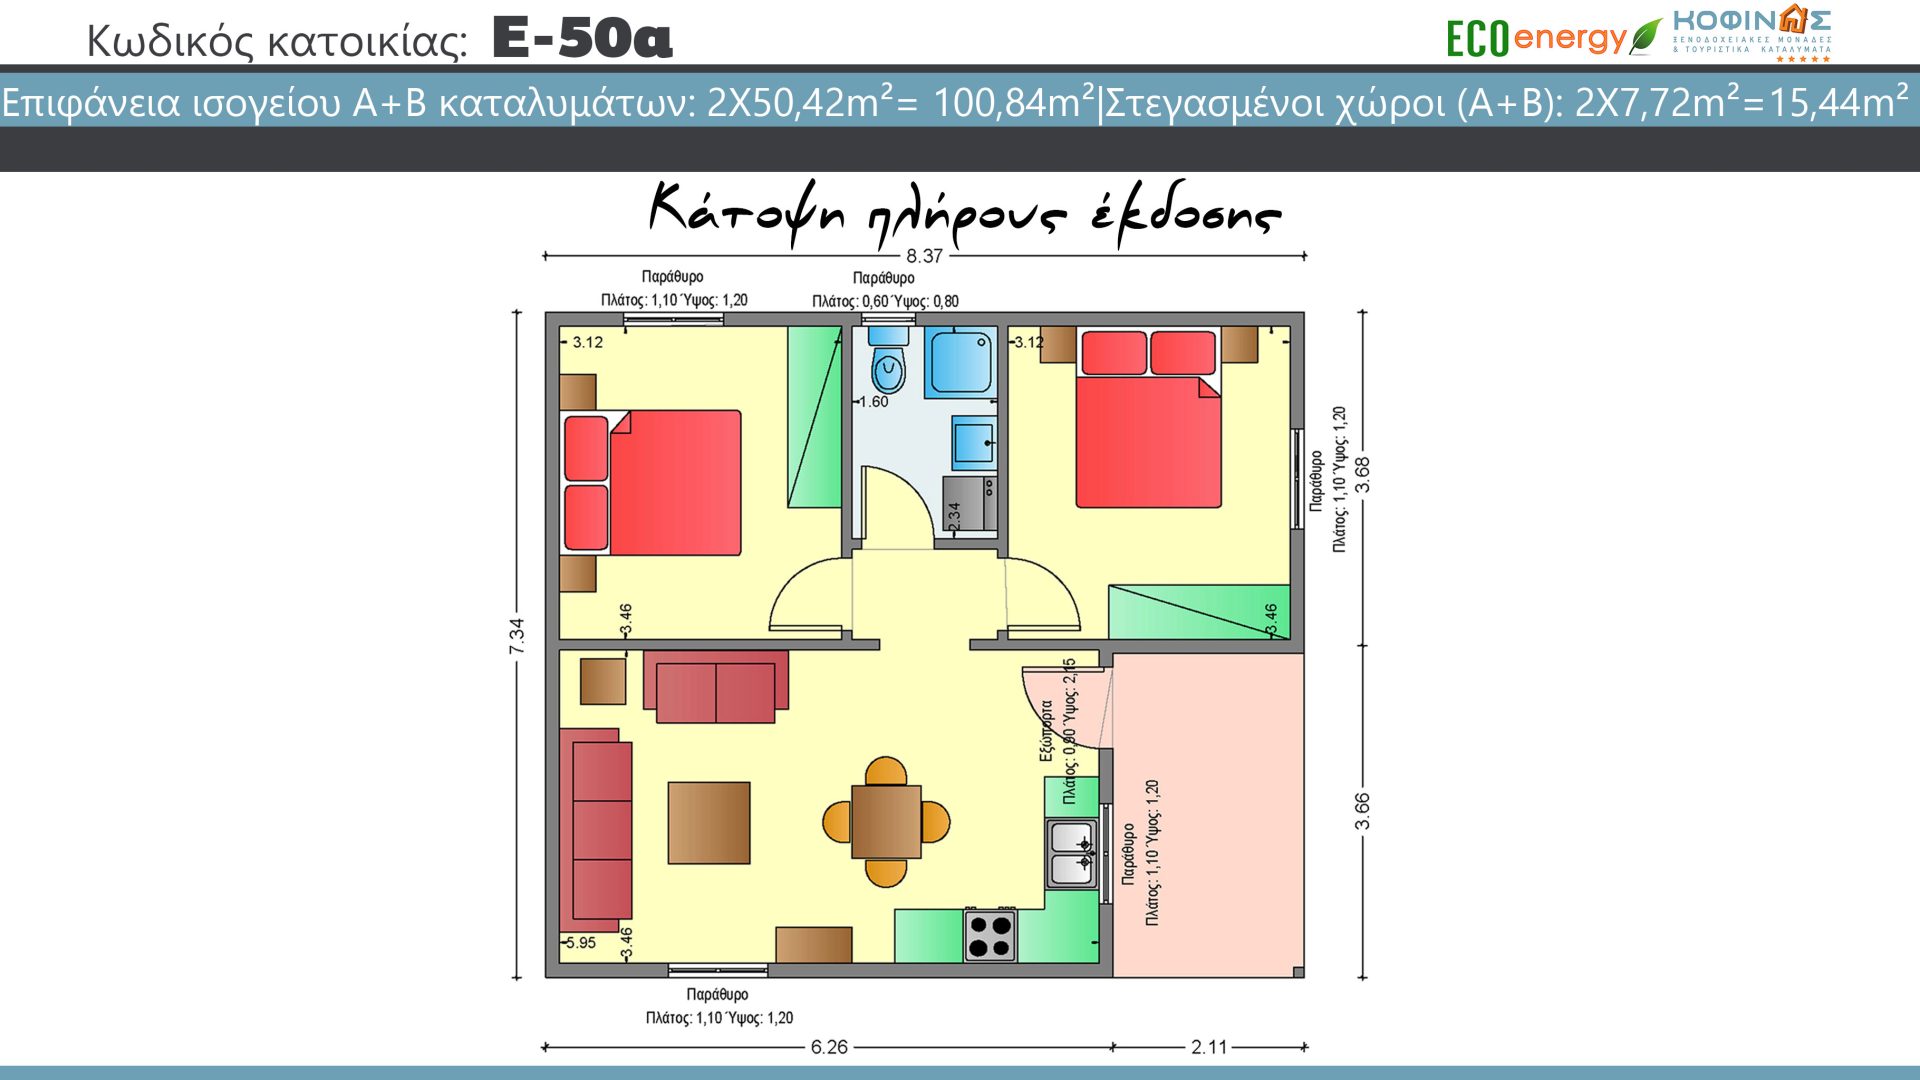 Συγκρότημα FlexyHome κατοικιών E-50α, συνολικής επιφάνειας 4 x 50,42 = 201,68 τ.μ., συνολική επιφάνεια στεγασμένων χώρων 15,44 τ.μ.